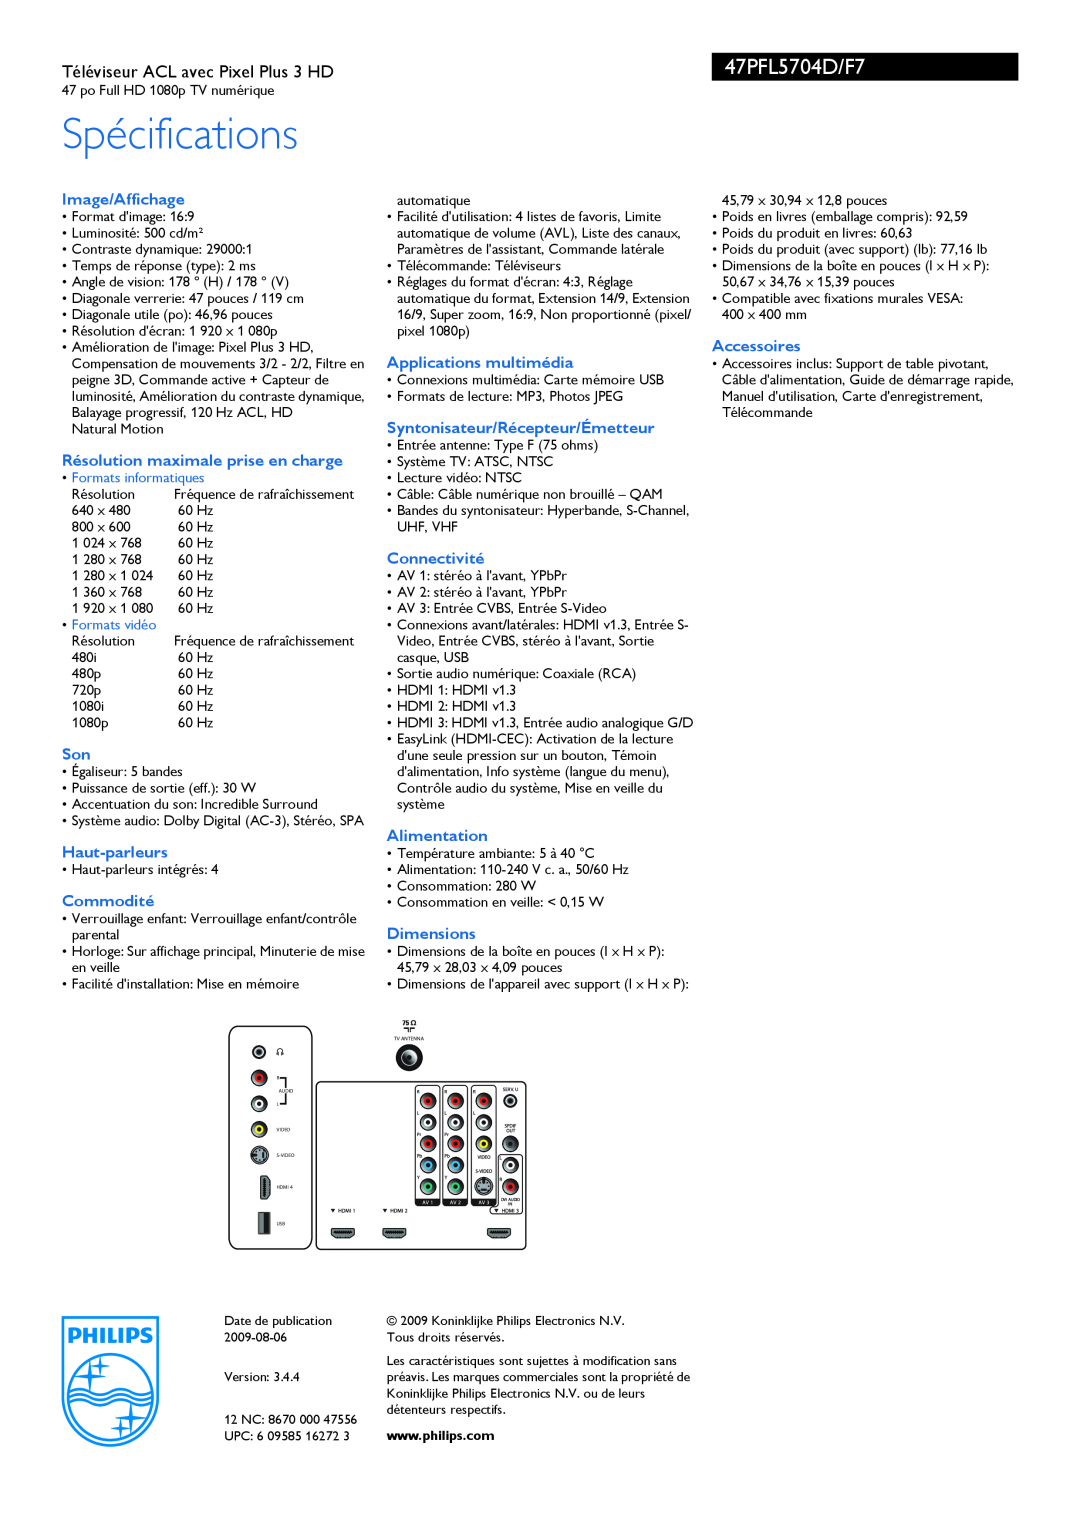 Philips 47PFL5704D manual Spécifications, Image/Affichage, Résolution maximale prise en charge, Haut-parleurs, Commodité 